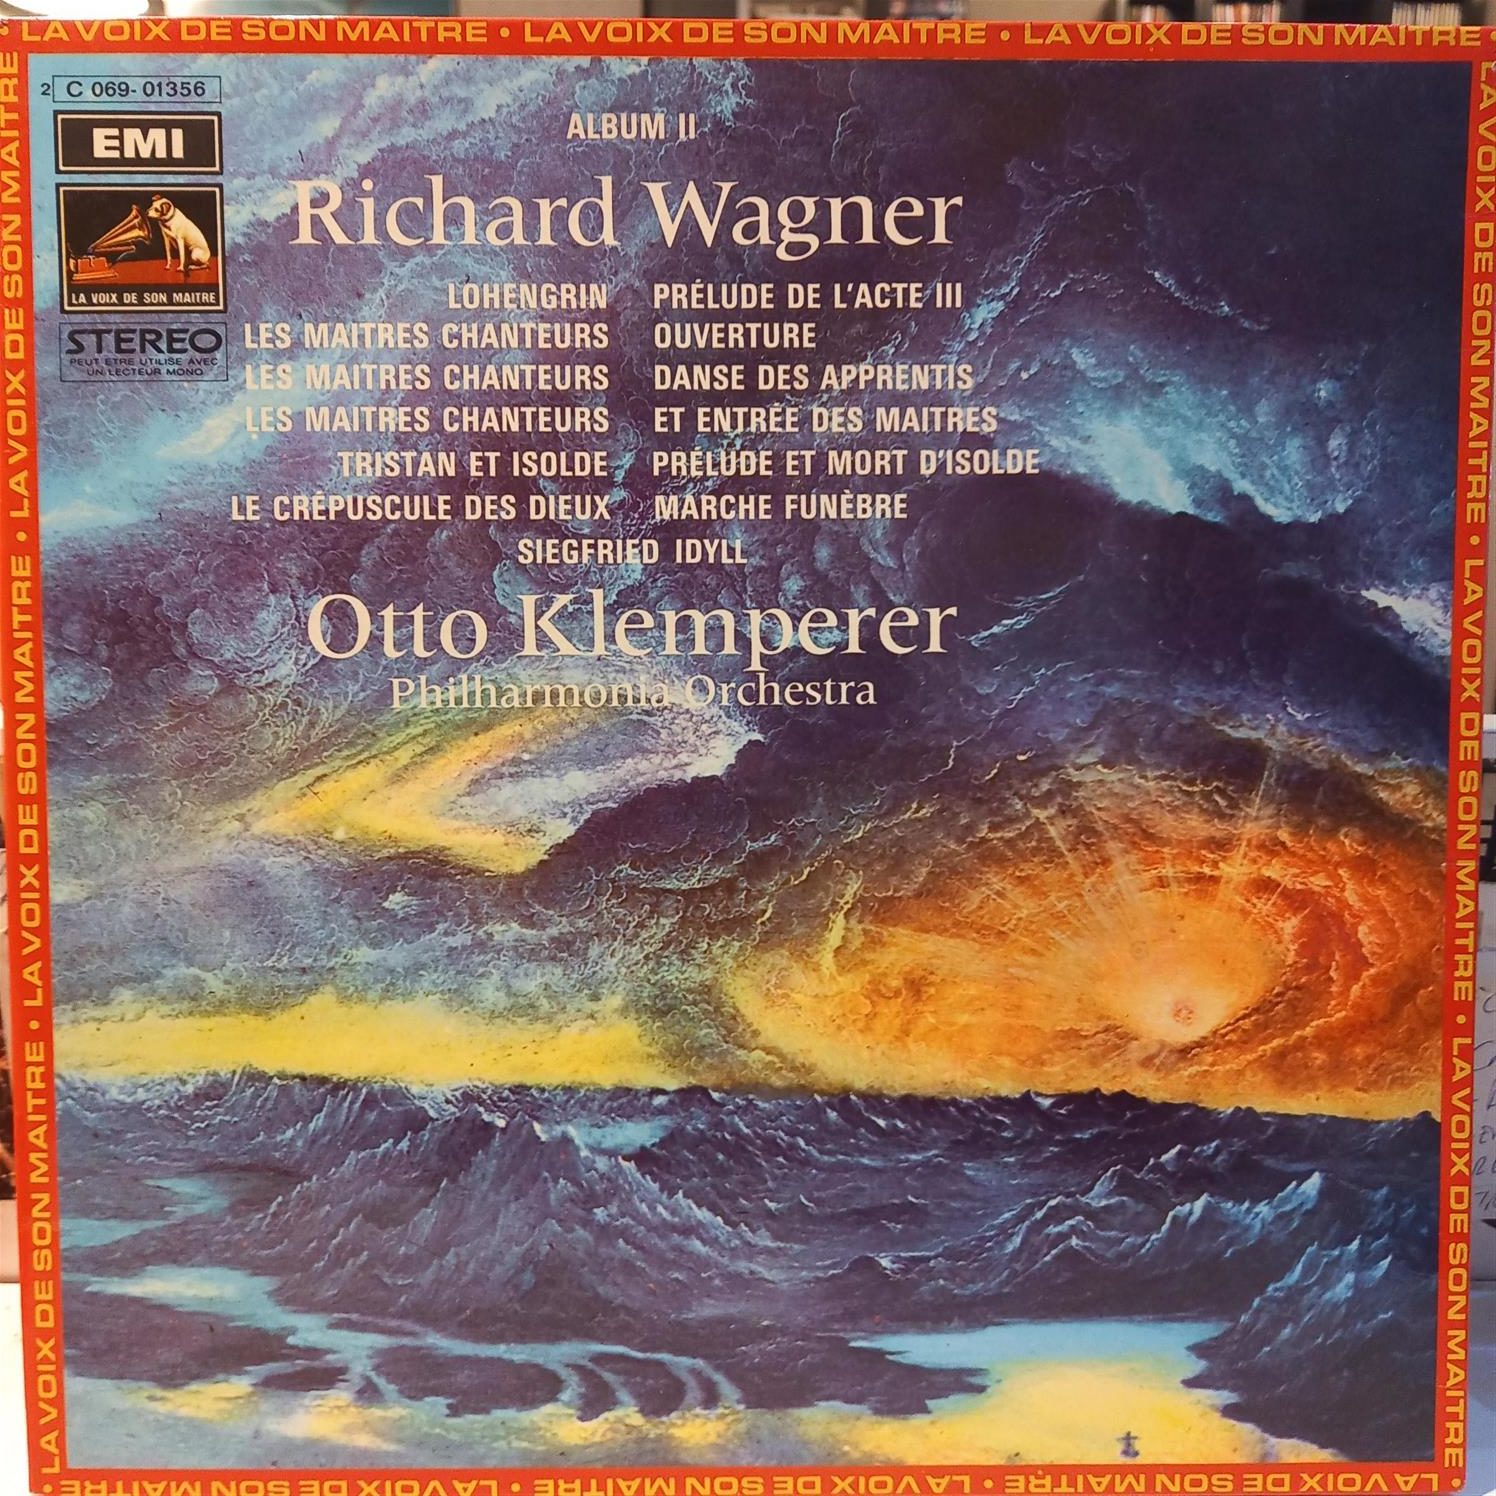 WAGNER – OTTO KLAMPERER – OUVERTURES – ALBUM II ON